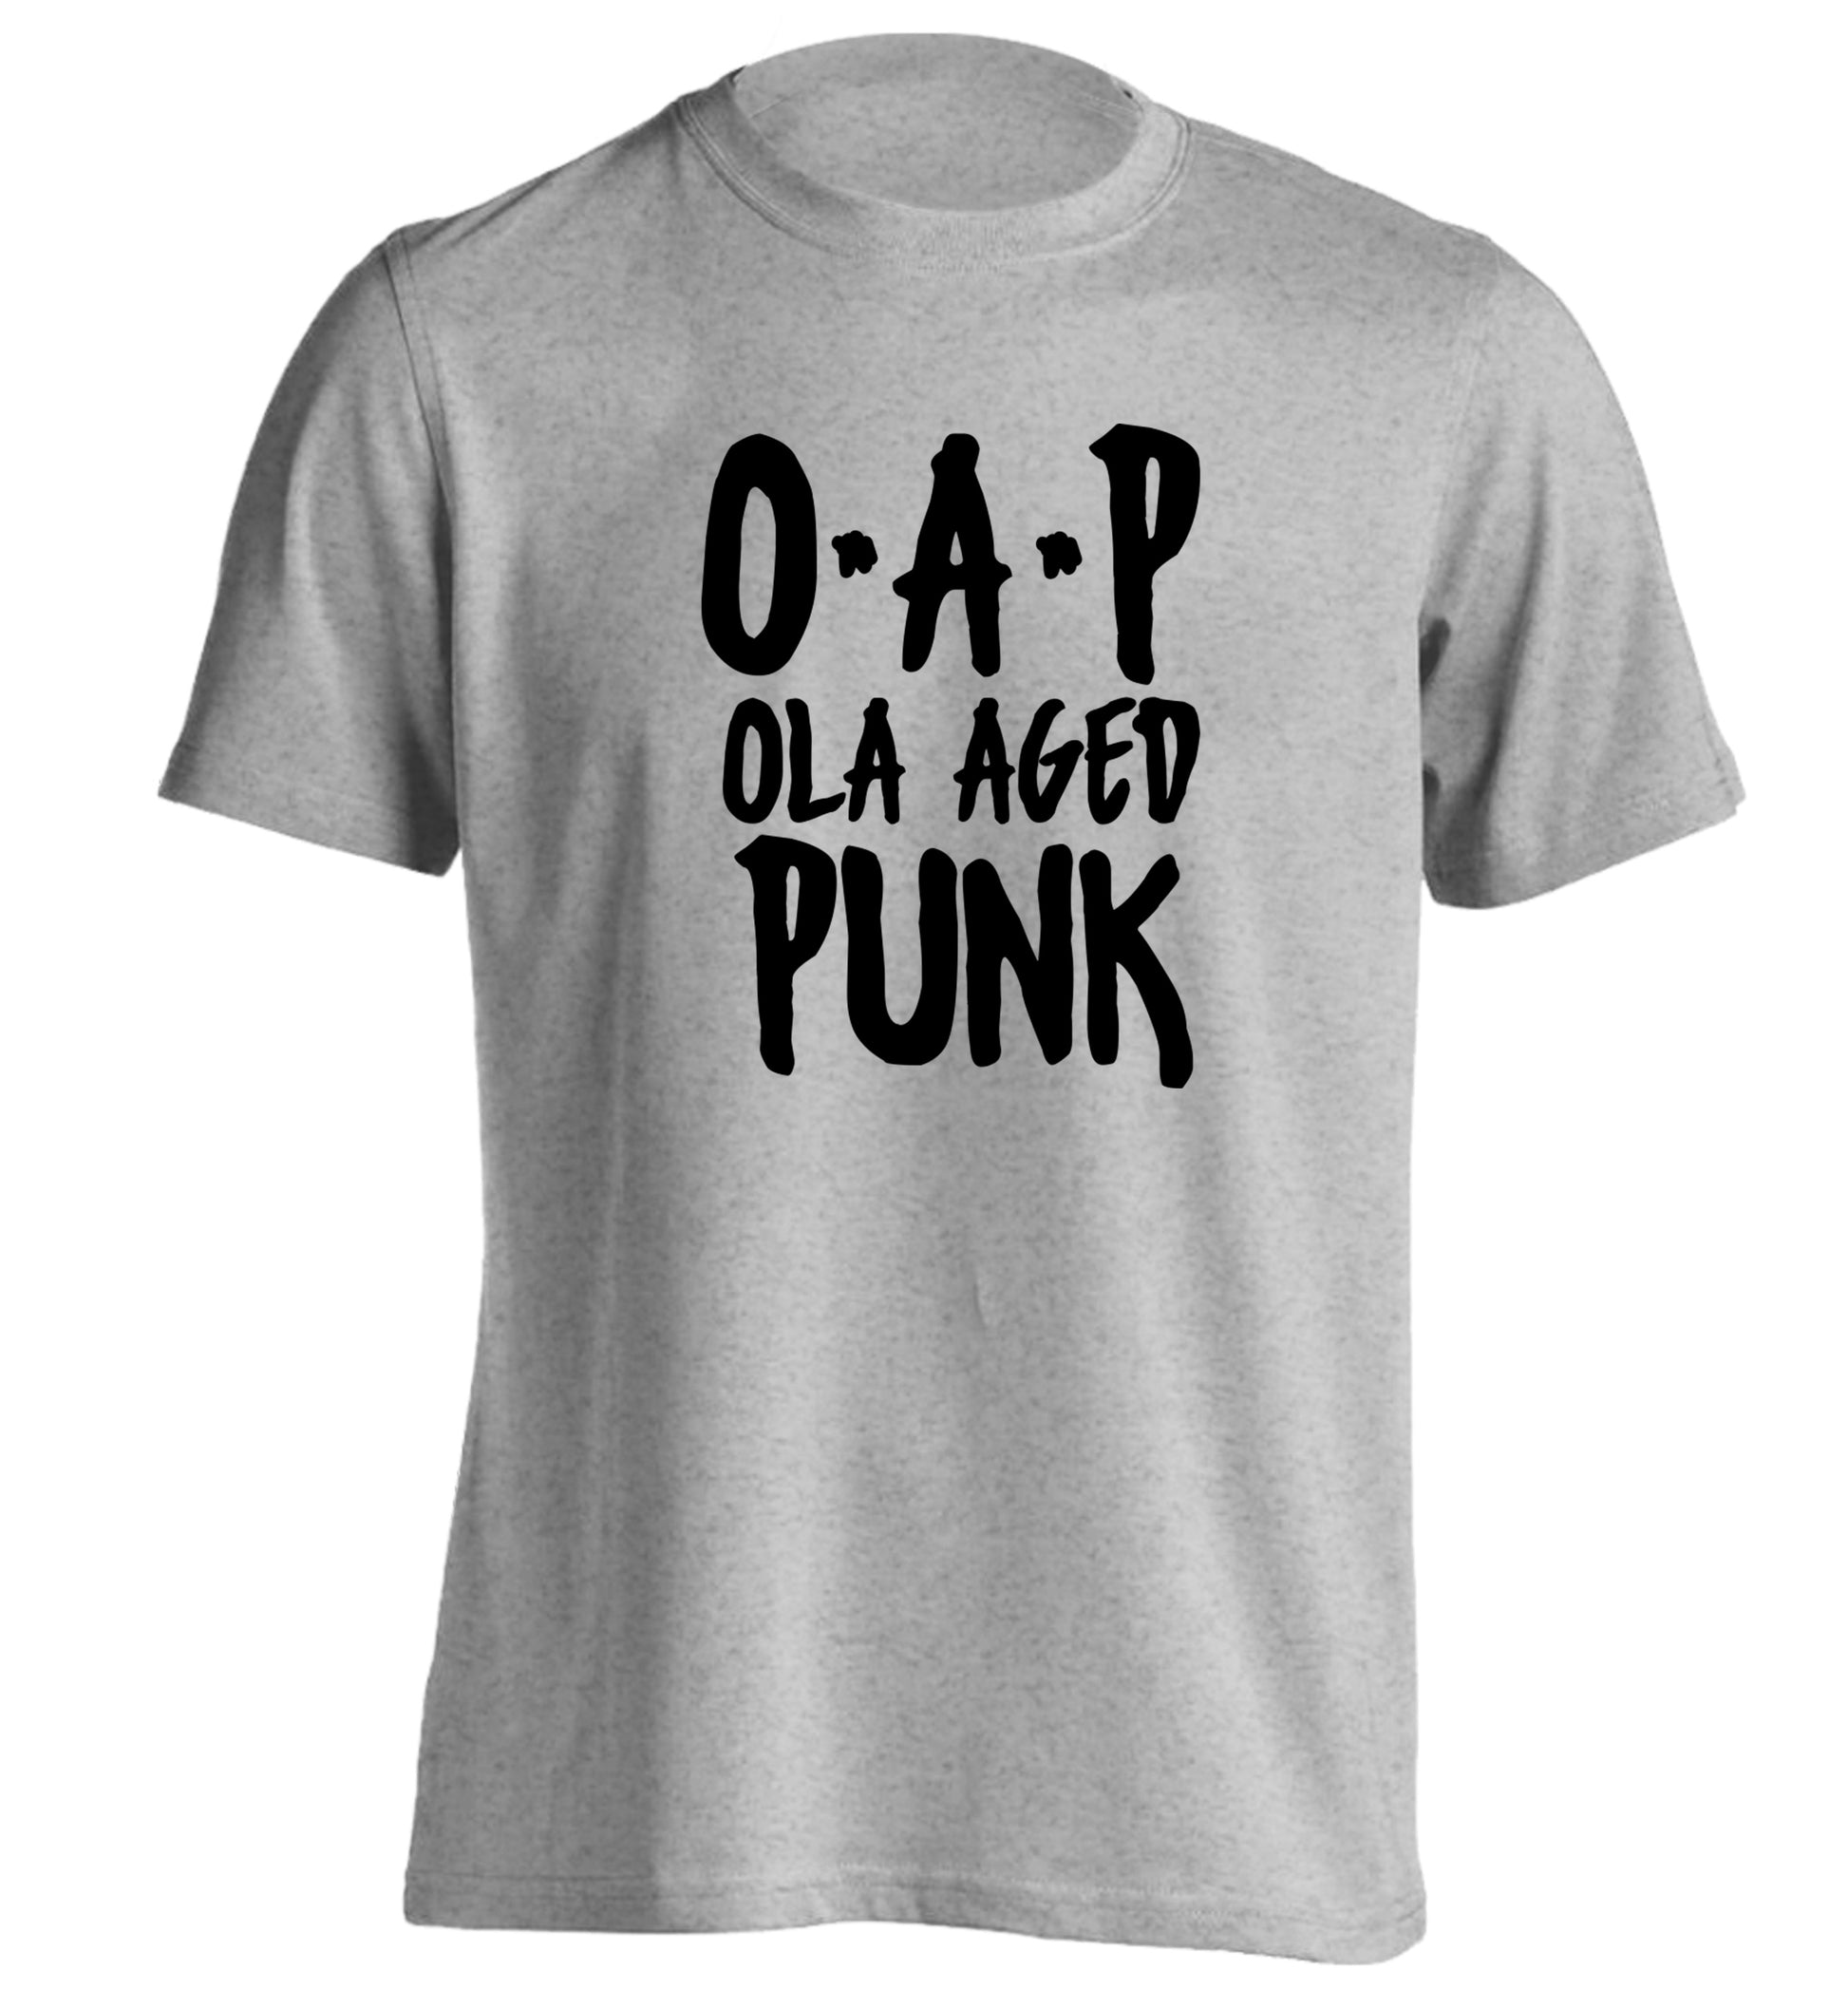 O.A.P Old Aged Punk adults unisex grey Tshirt 2XL